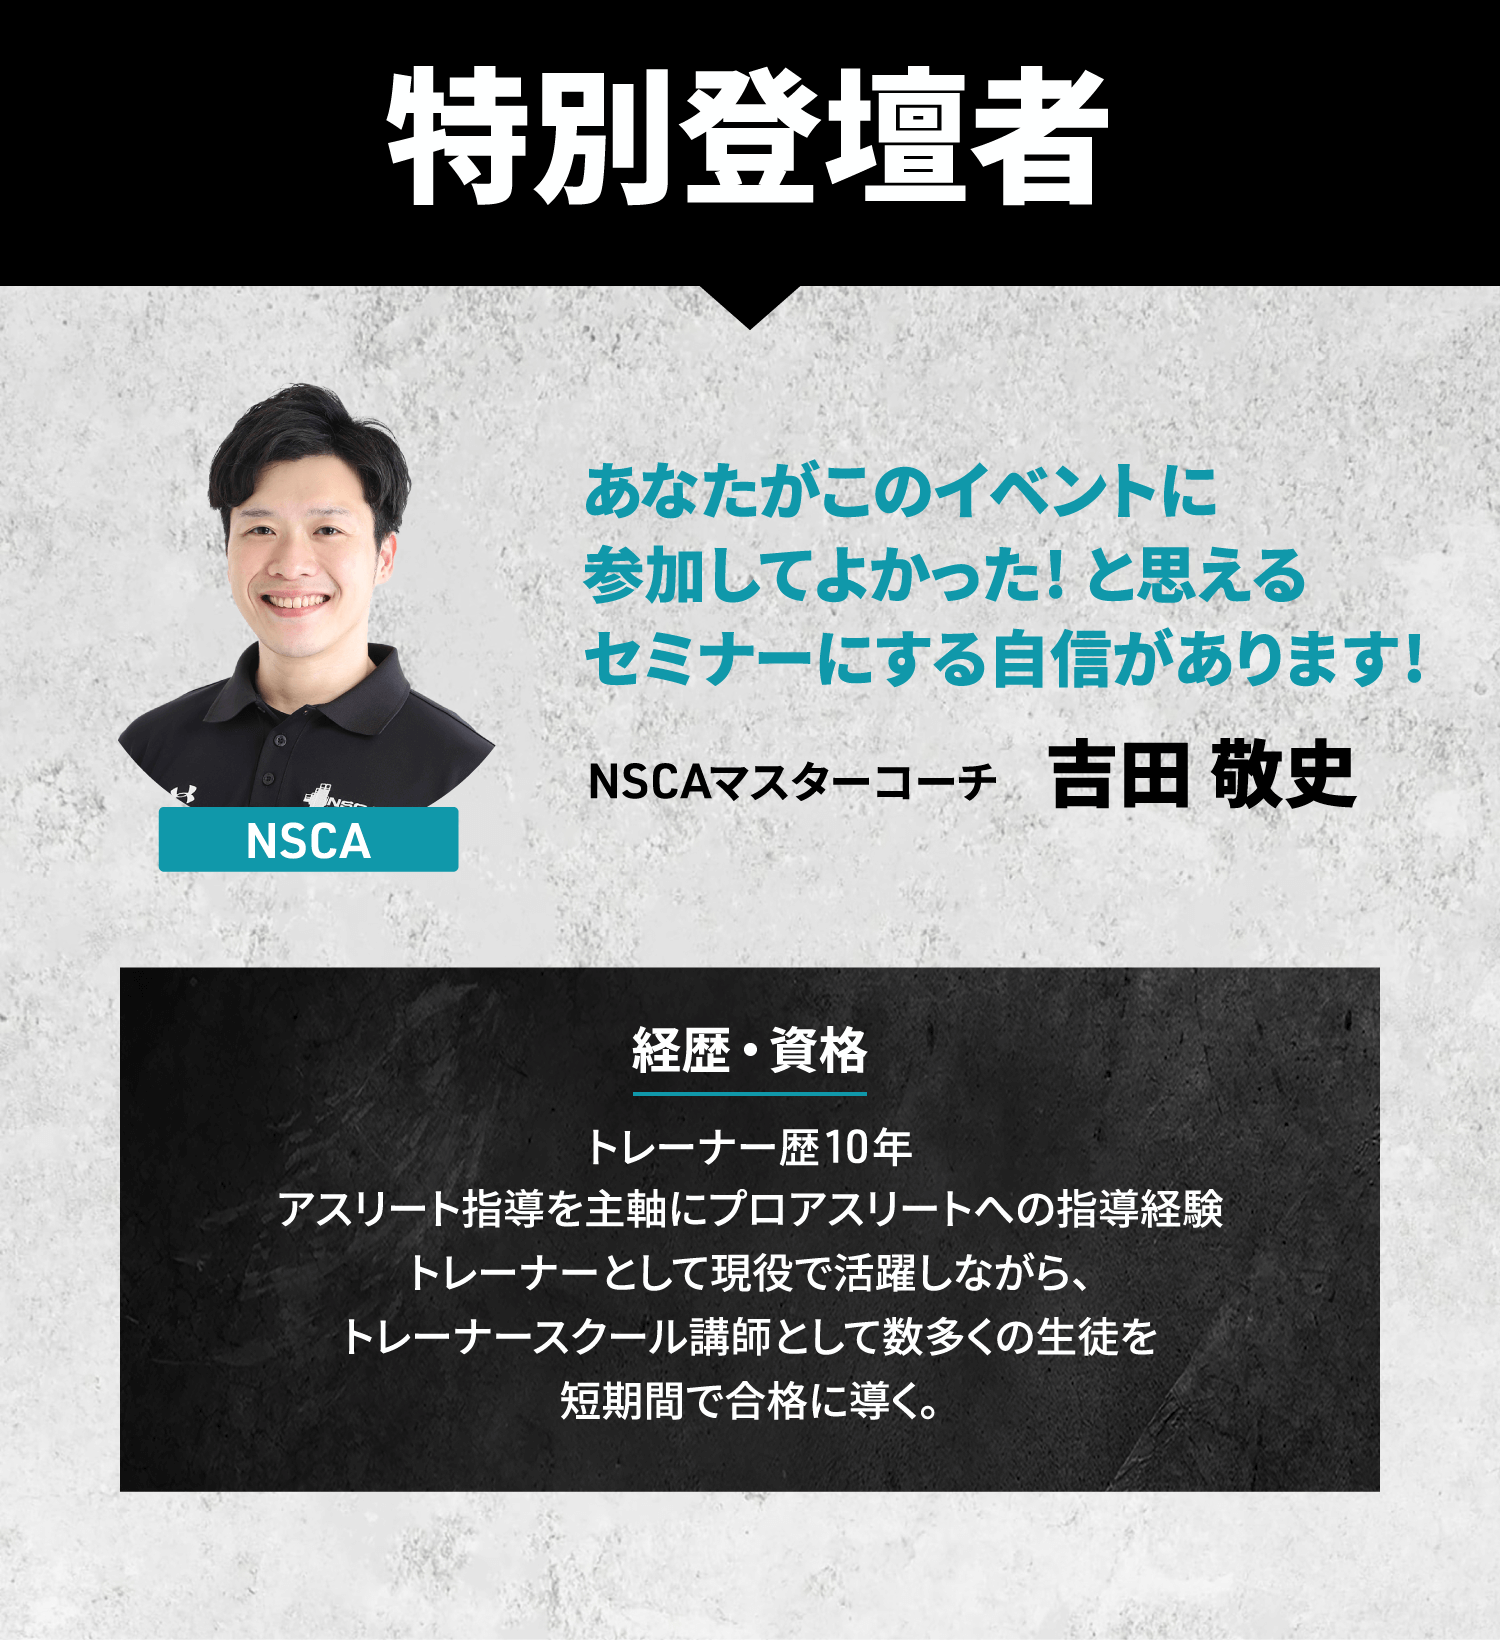 特別登壇者 NSCAマスターコーチ吉田敬史